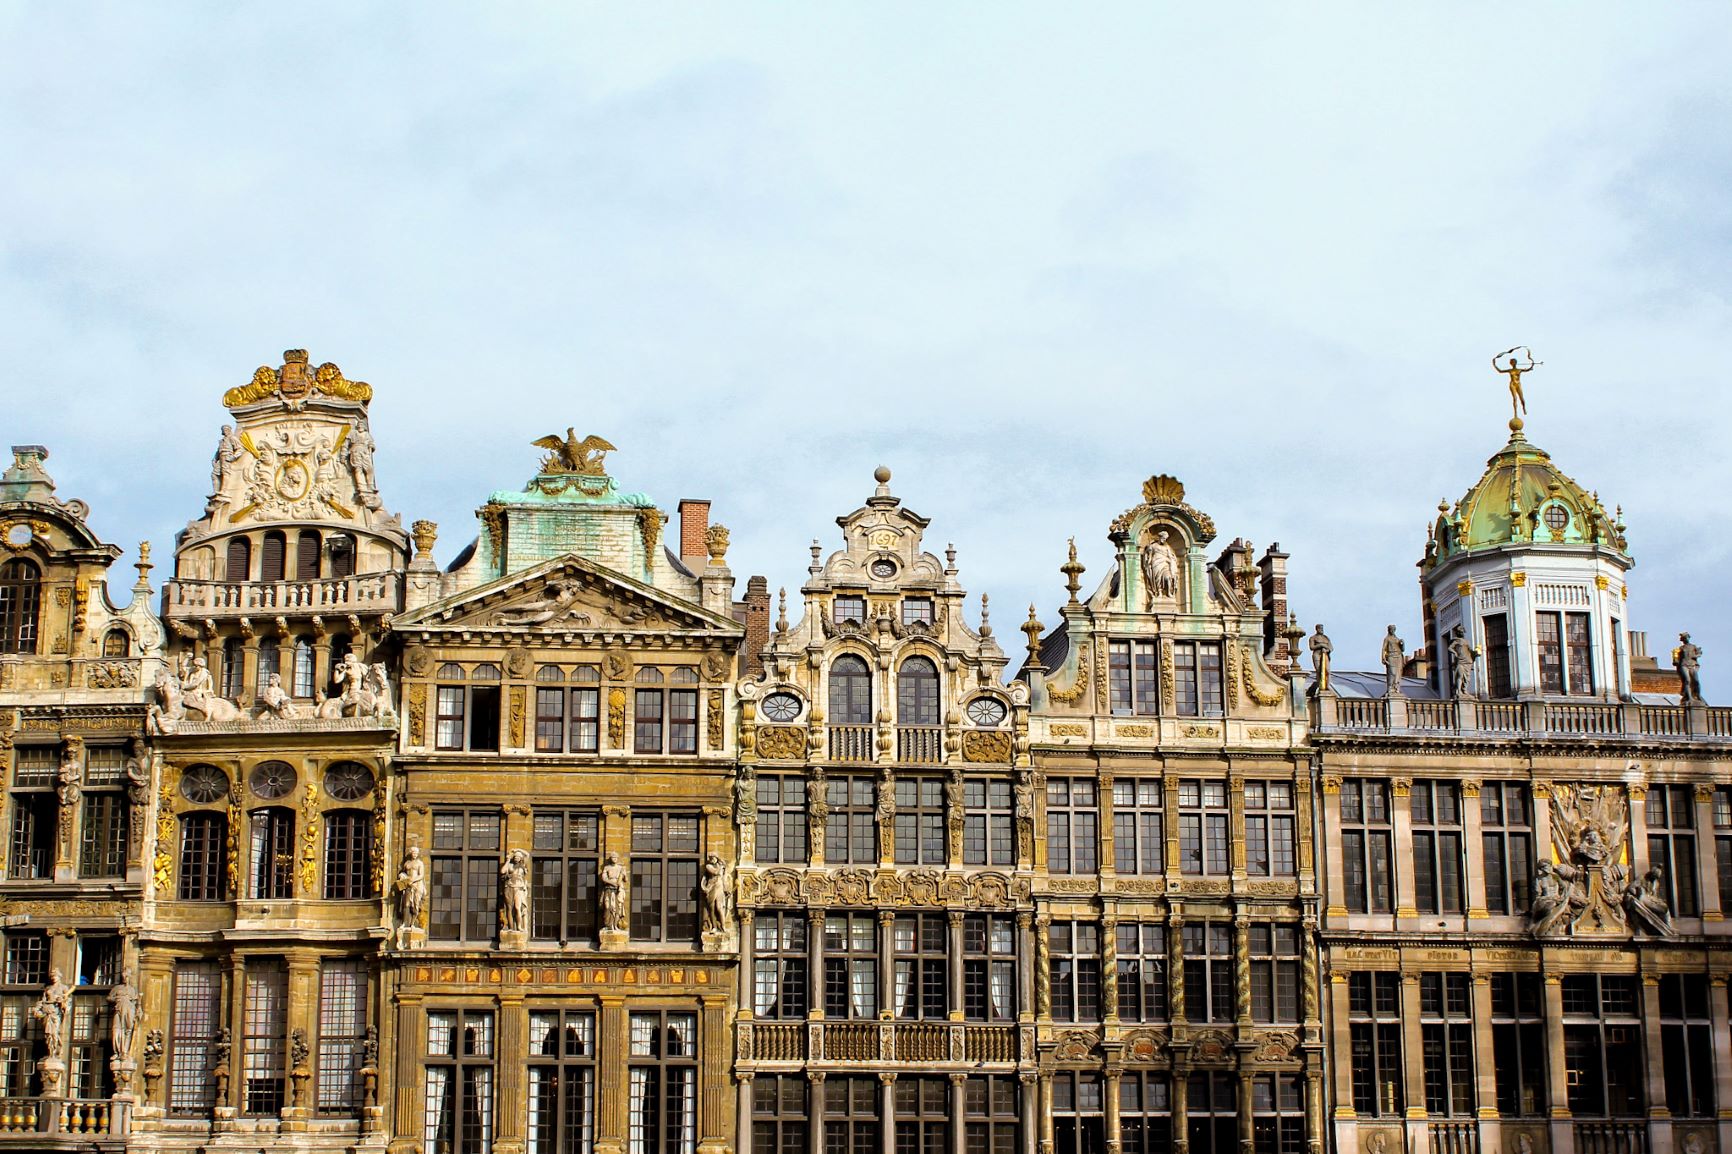 13 UNESCO World Heritage Sites through Belgium